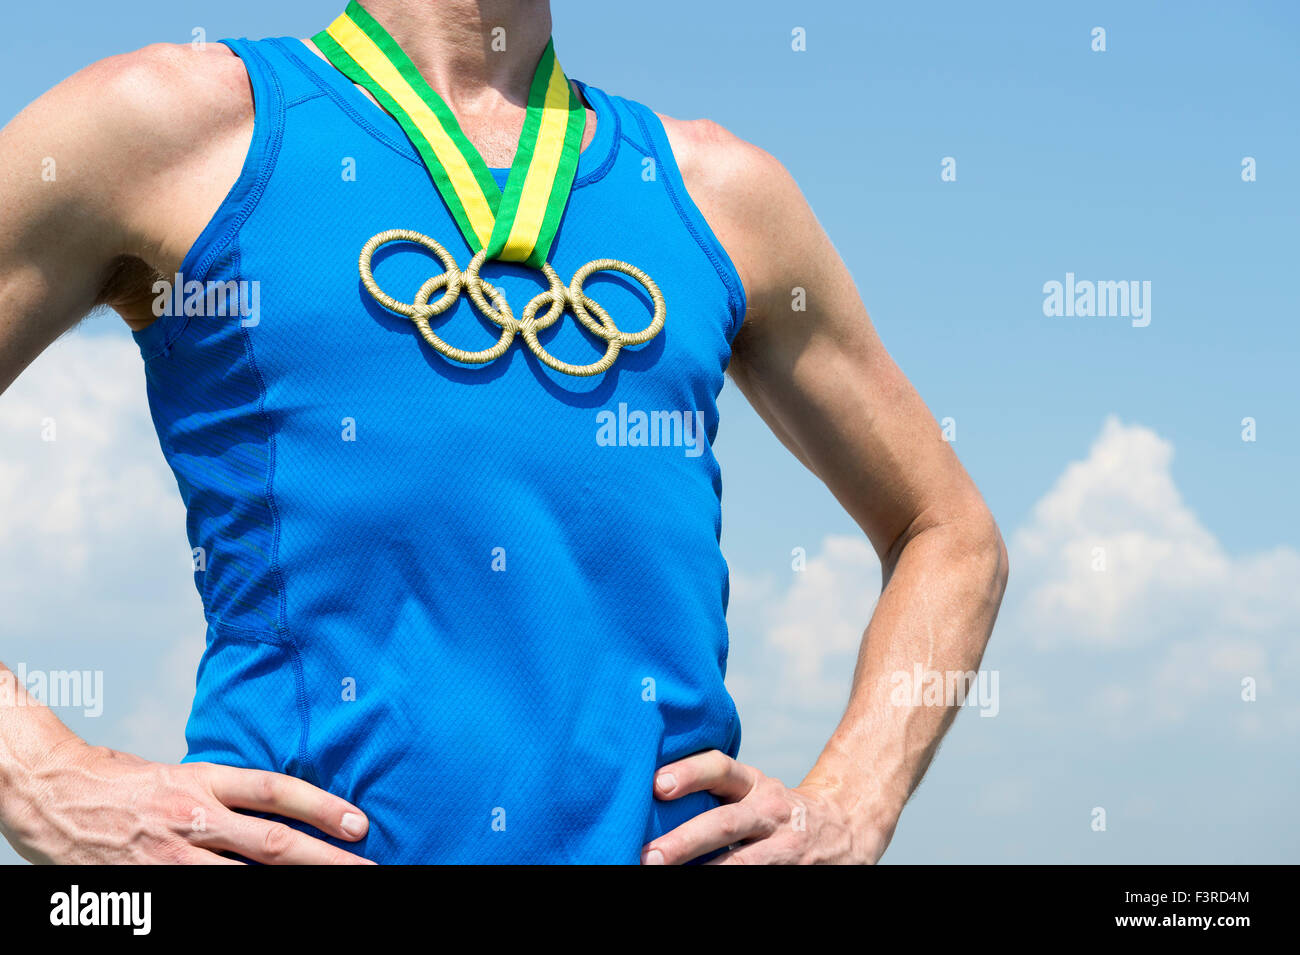 RIO DE JANEIRO, Brasilien - 4. Februar 2015: Olympische Ringe gold Medaille von Brasilien Farbband auf der Brust eines Athleten hängt. Stockfoto